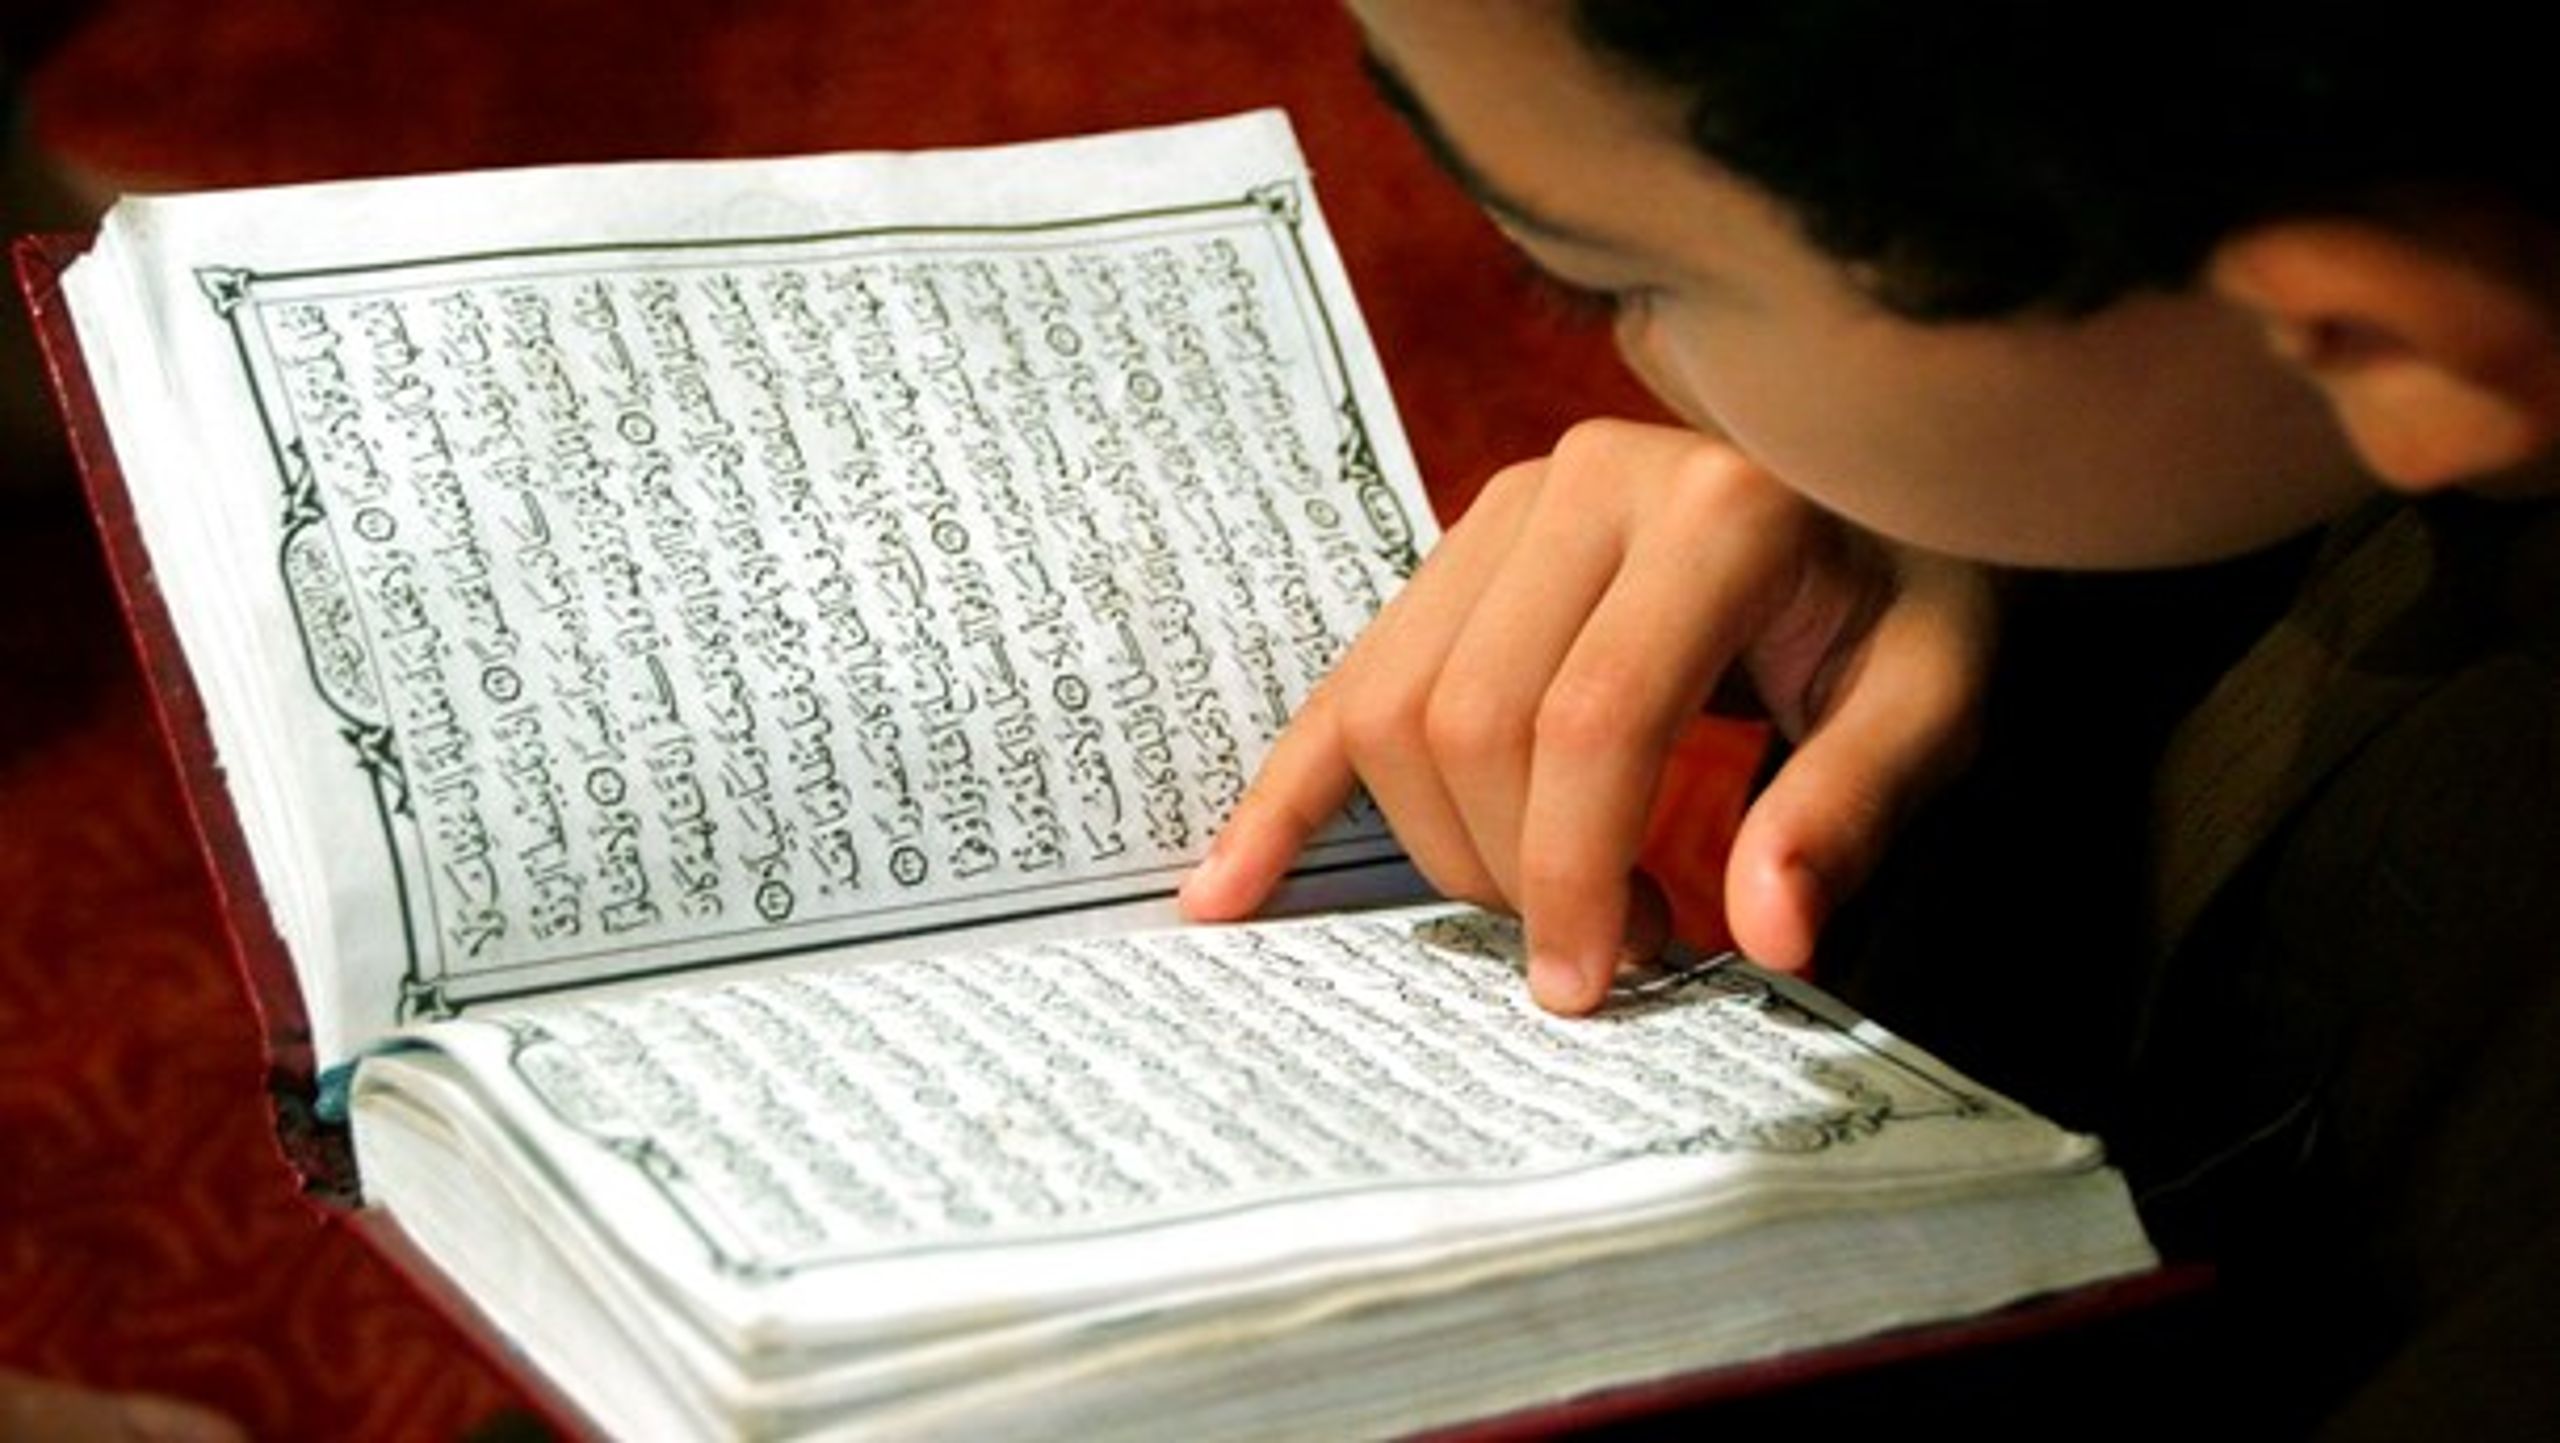 Rapport om muslimske minoriteter konkluderer,&nbsp;at nogle unge bruger grundigt kendskab til Koranen til at forhandle mere frihed. Det er blevet genstand for upassende politisk kritik, skriver dekan.